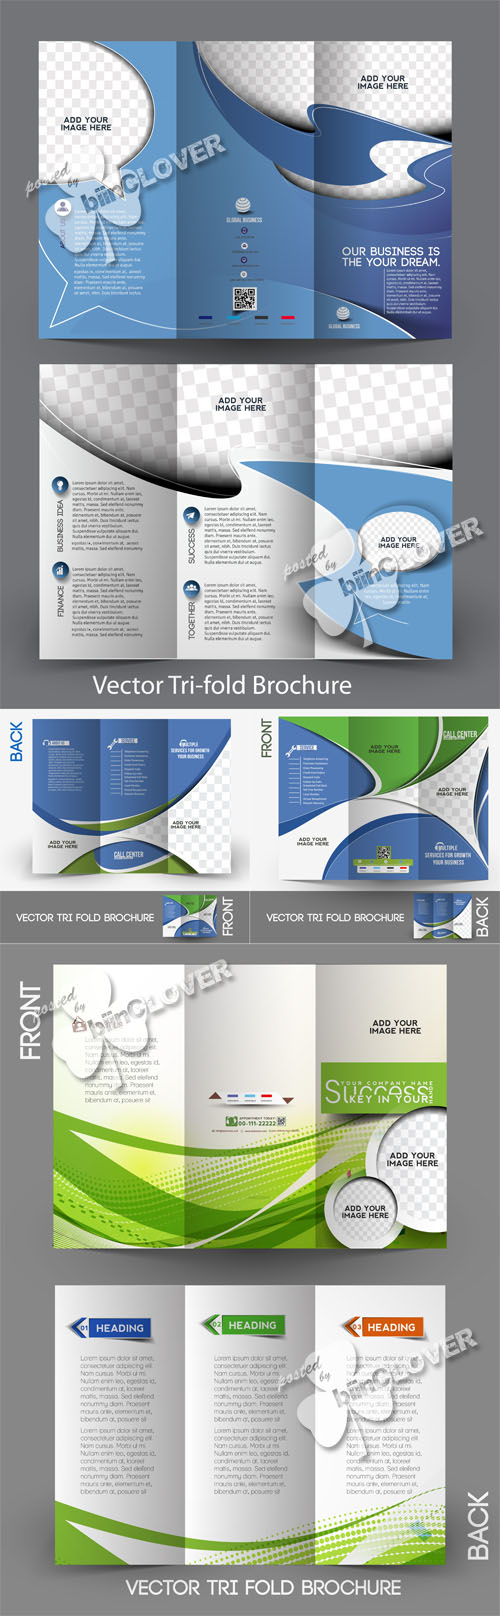 Corporate brochure design 0508